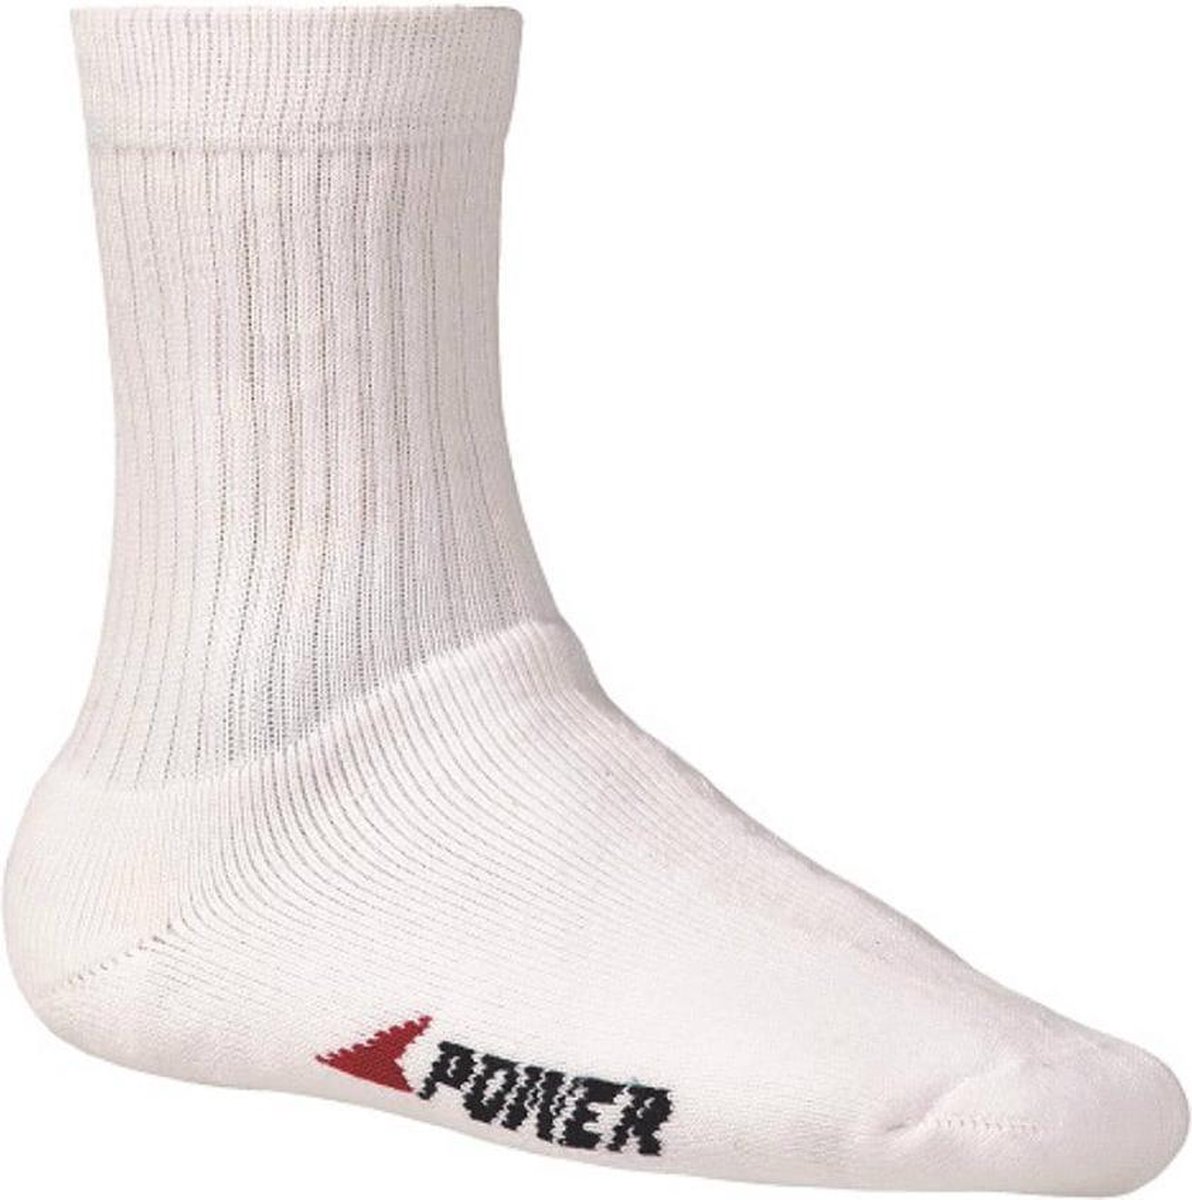 Bata badstof sokken Industrials Power - wit - 35-38